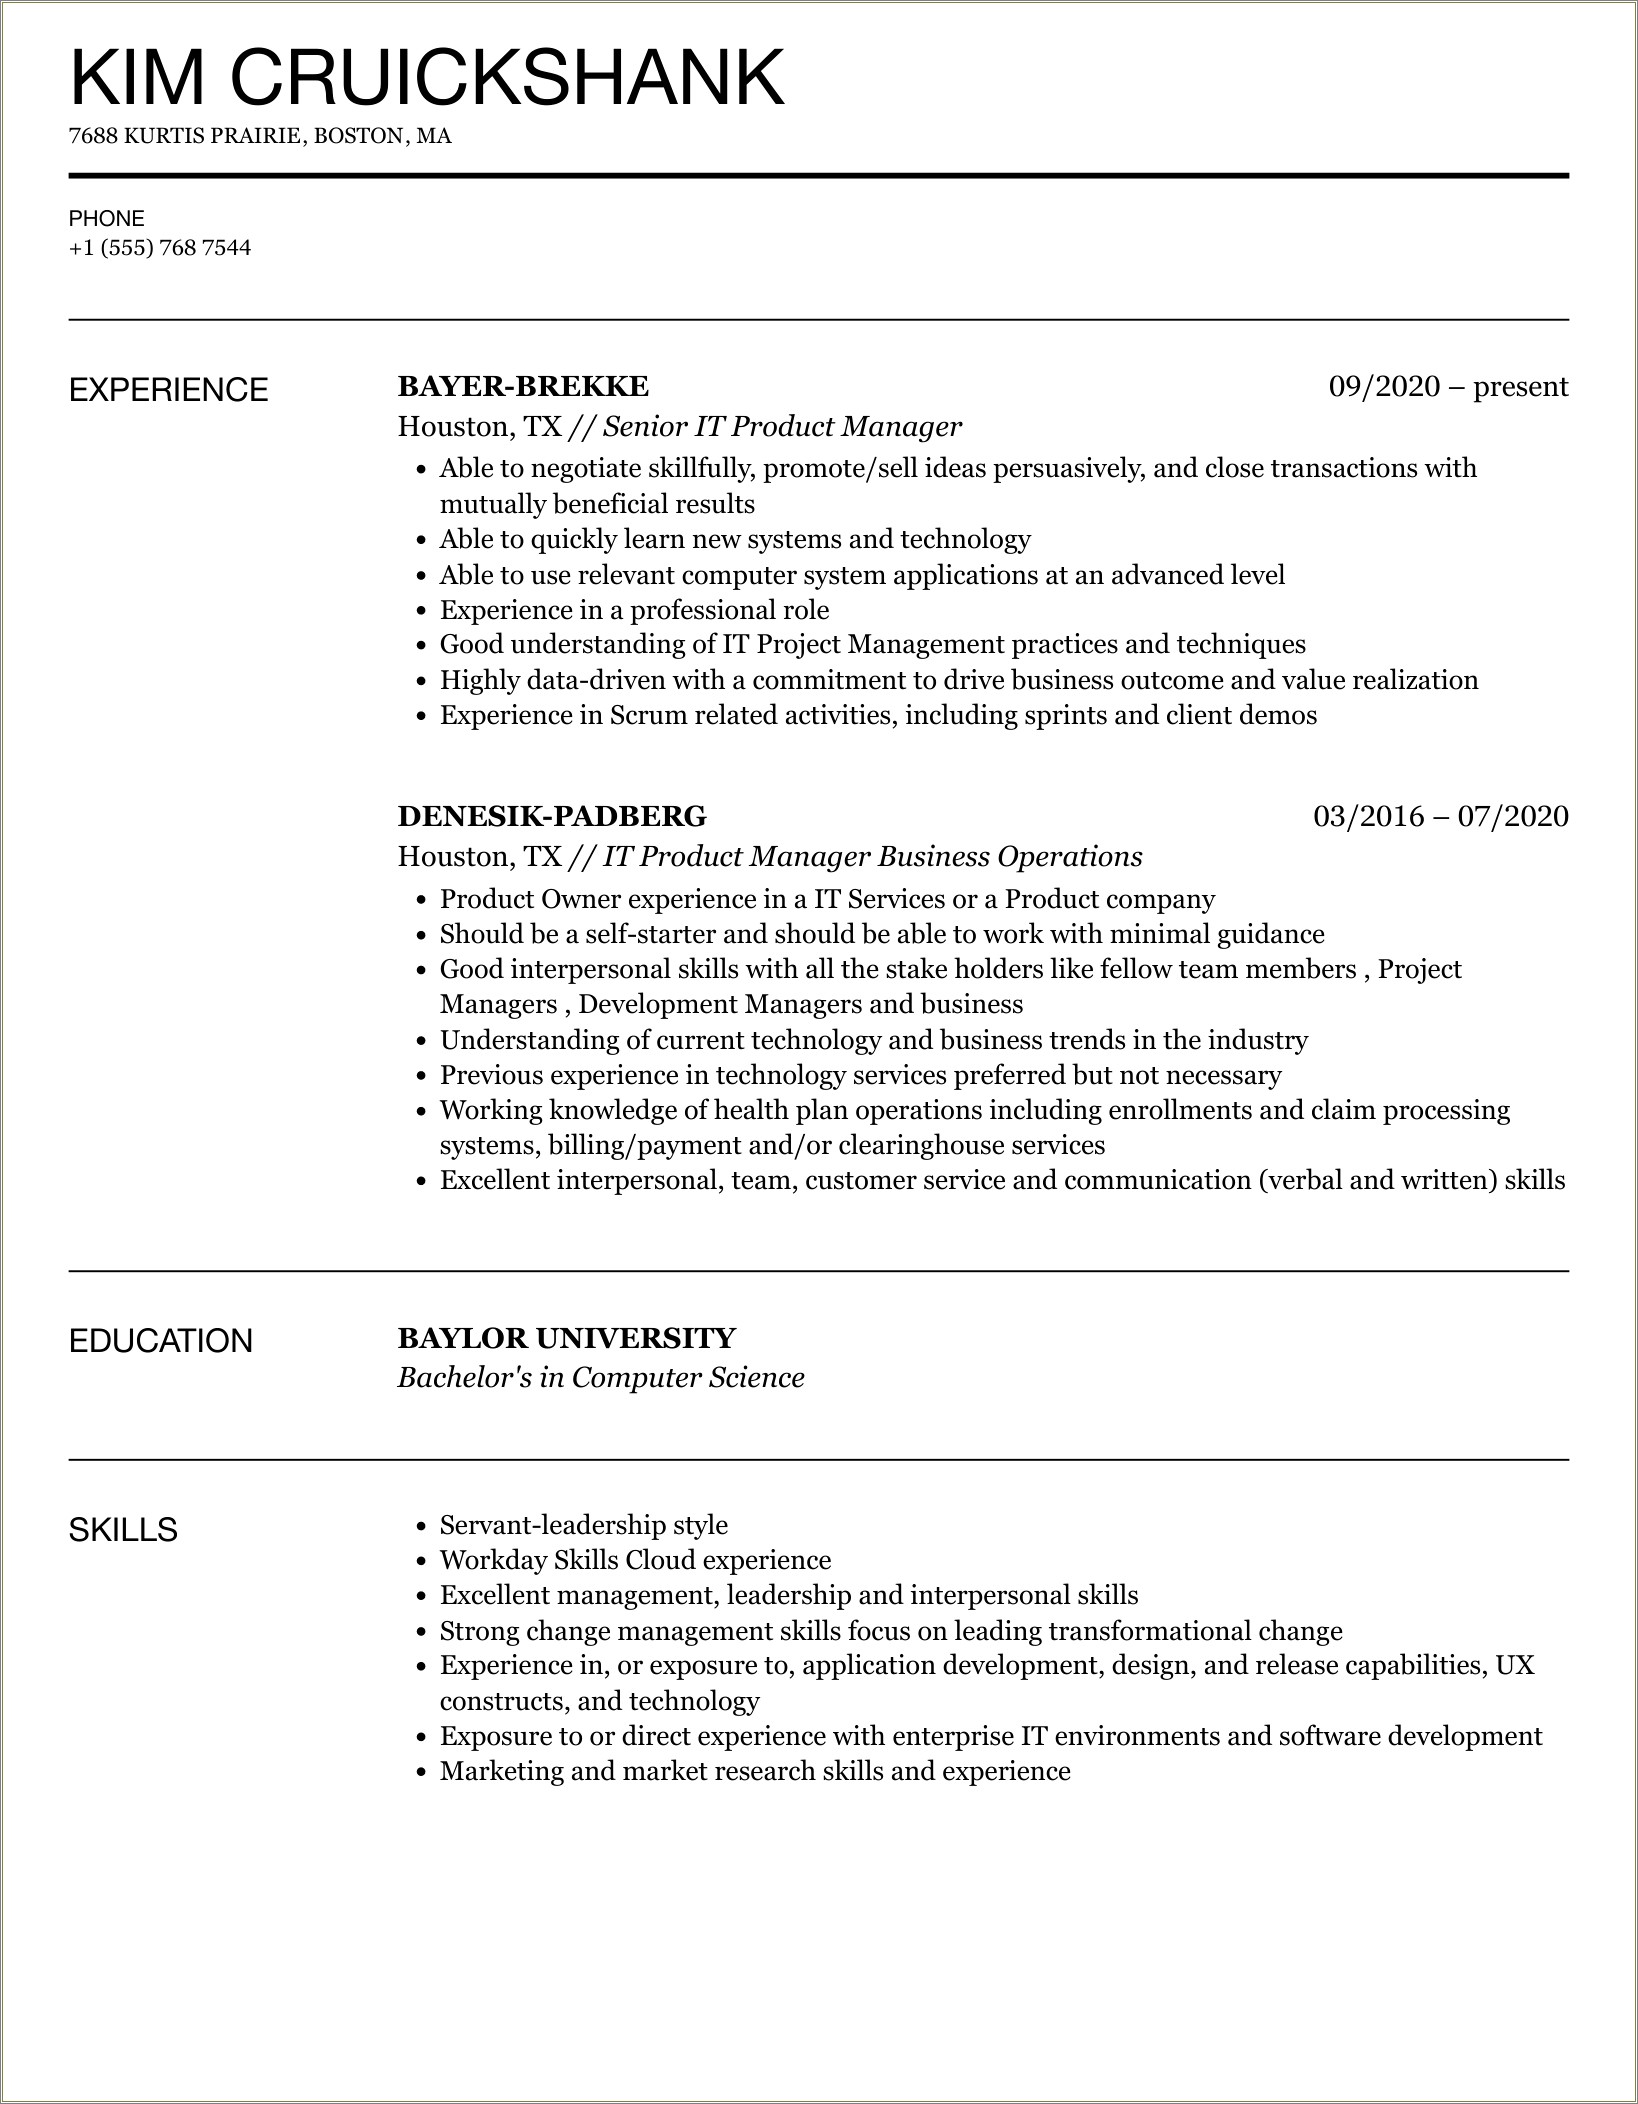 Resume.sample To Apply For Kohls